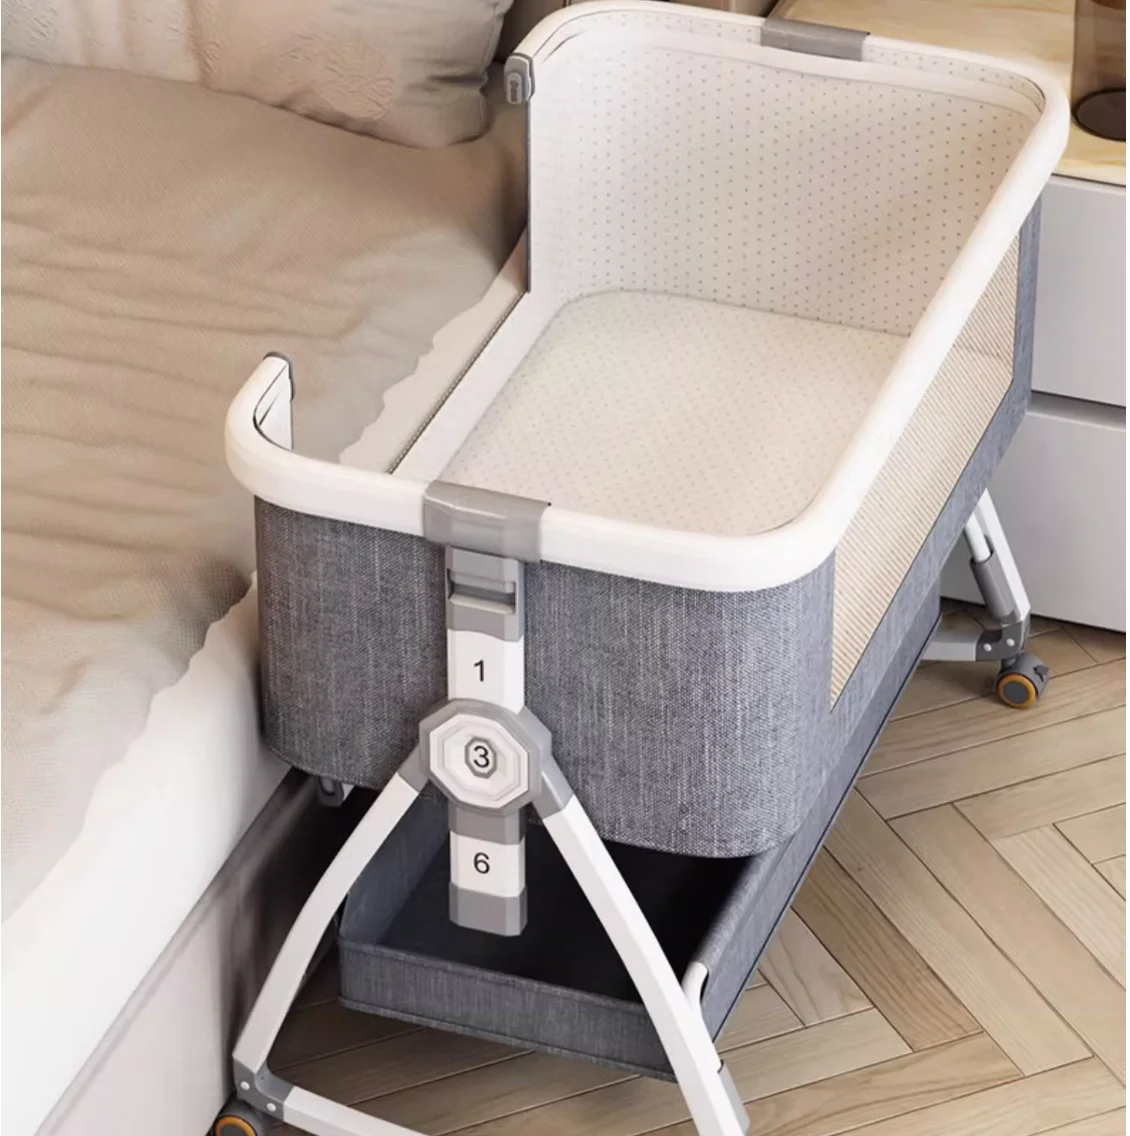 Алюминиевая кроватка передвижная переносная люлька складная многофункциональная кровать bb состыкованная двуспальная кровать для новорожденных